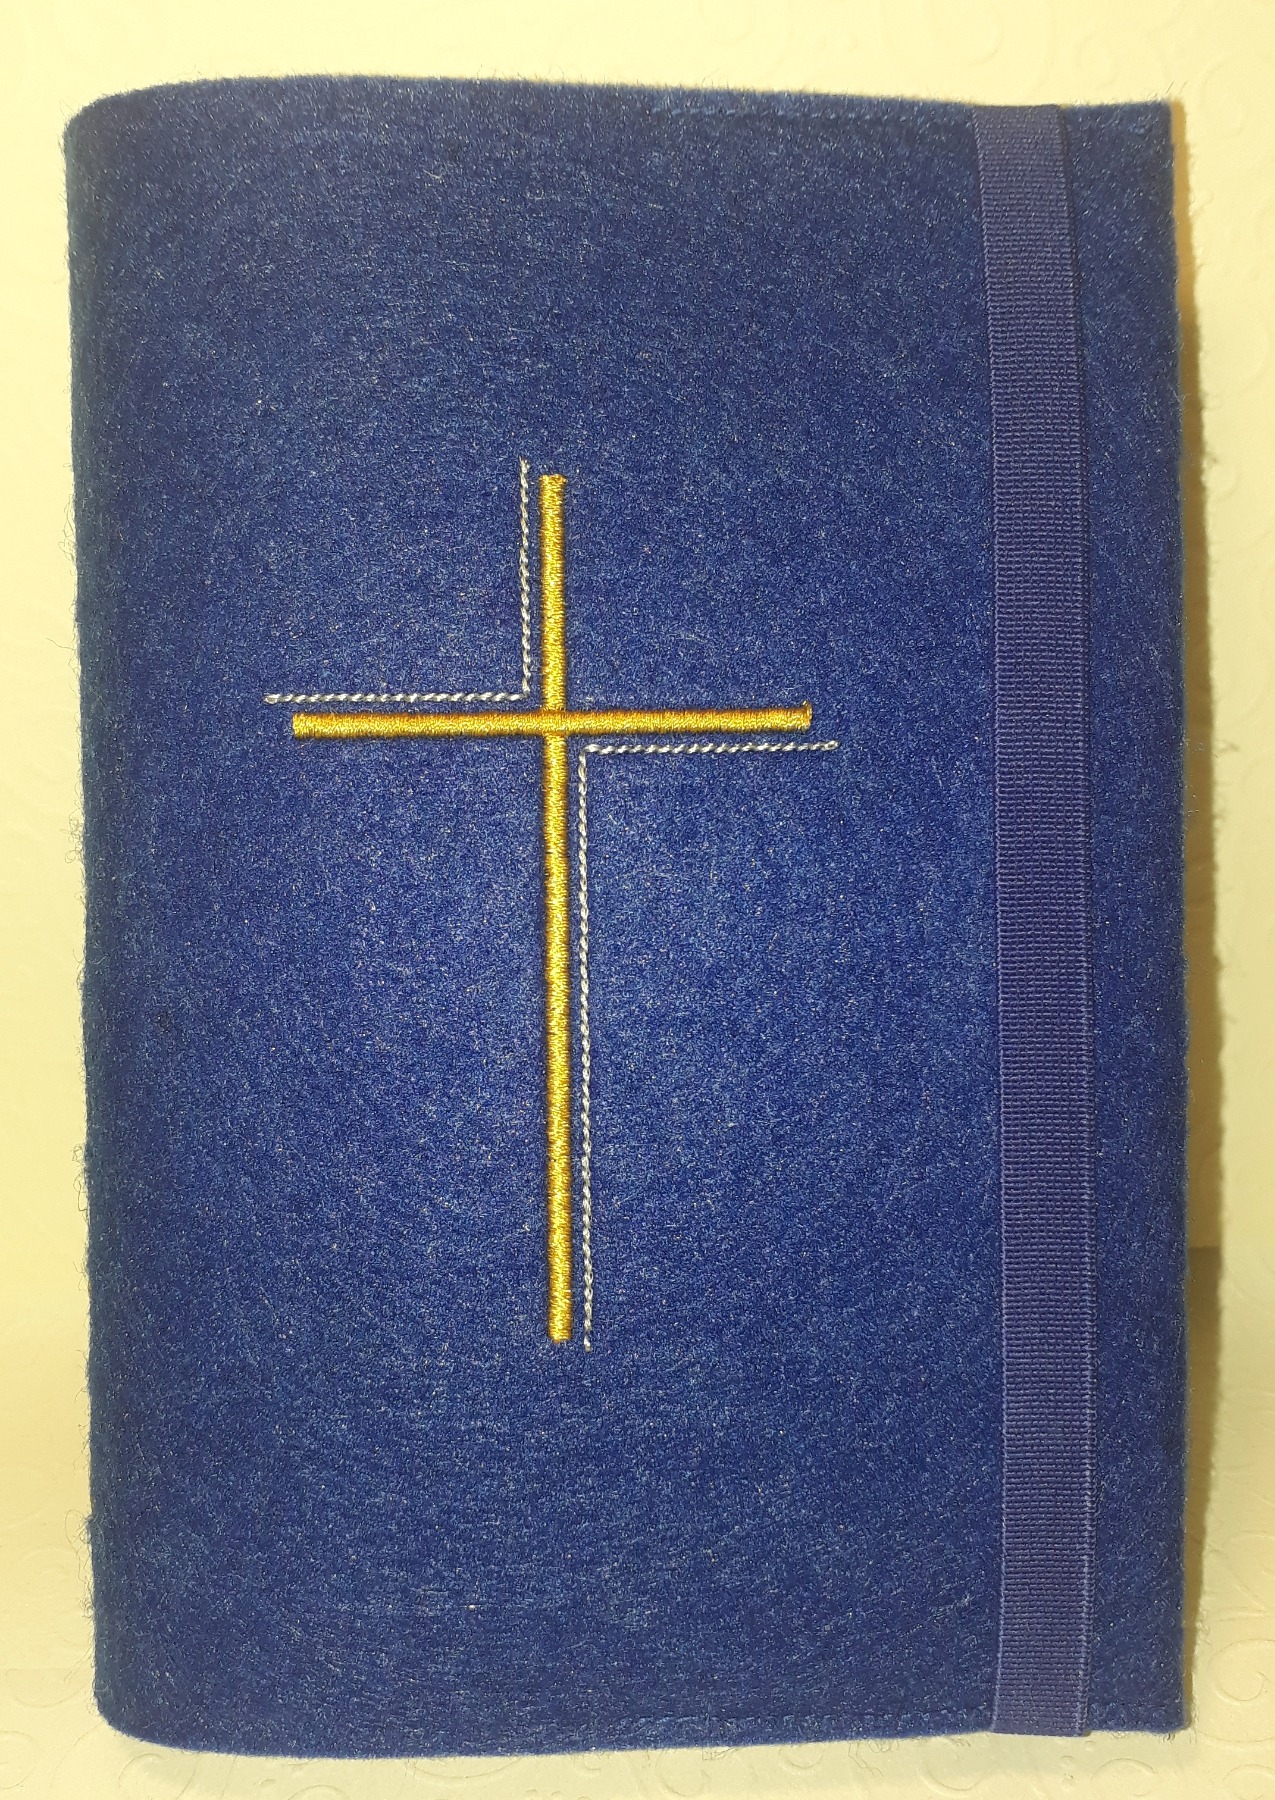 Einband für Gotteslob, Gesangbuch oder Bibel und Rosenkranztäschchen 8